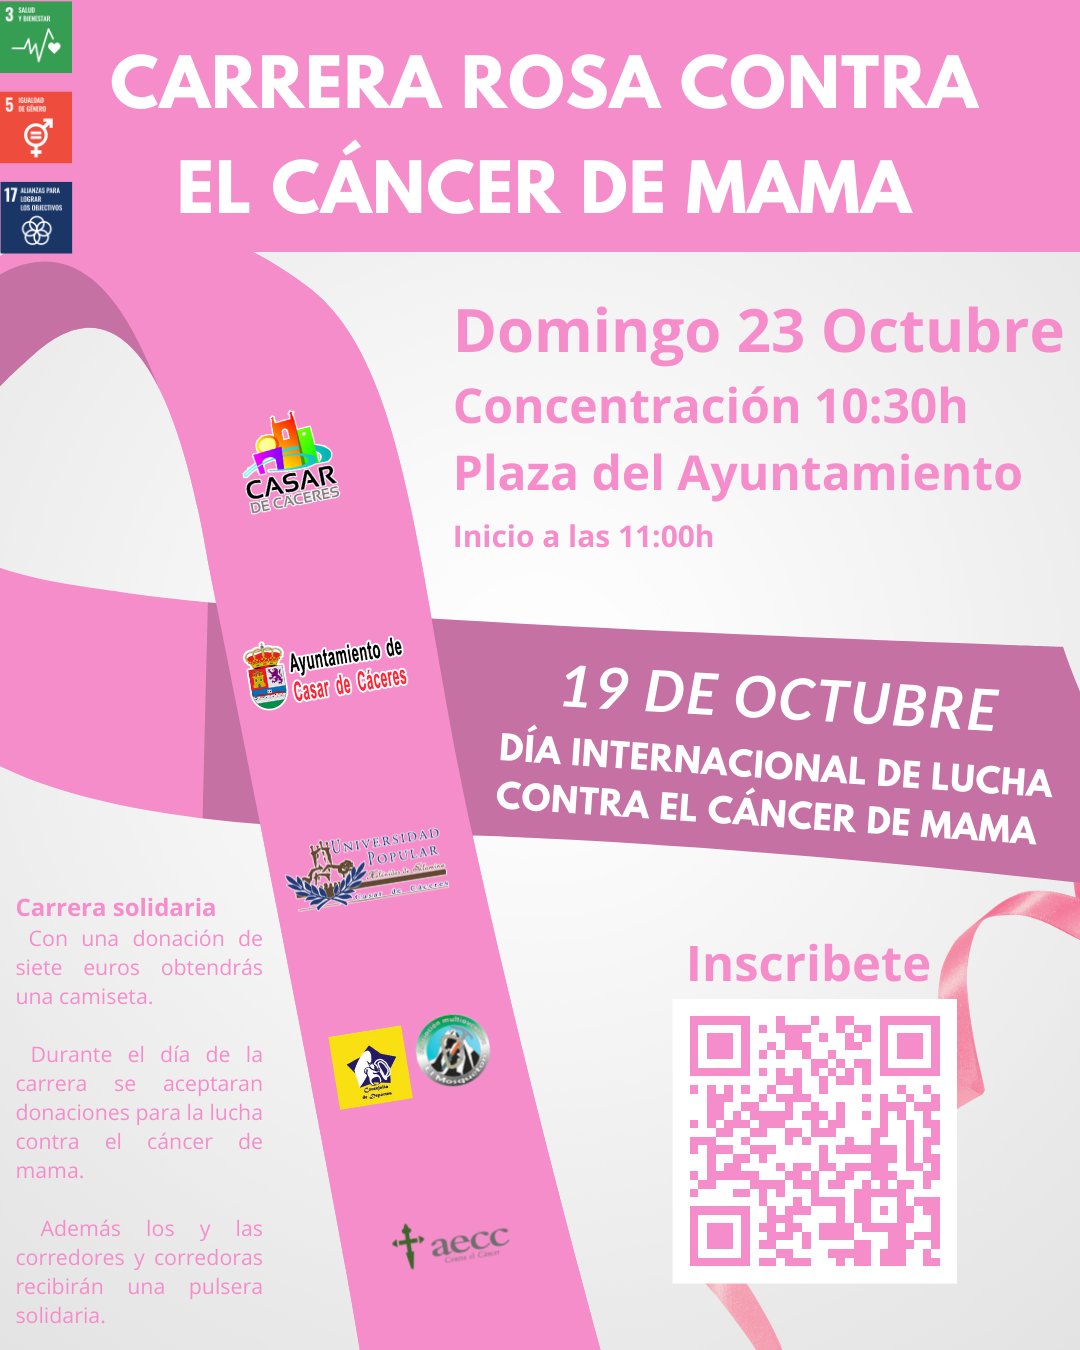 La Marcha rosa contra el cáncer de mama se celebrará este domingo por primera vez en Casar de Cáceres